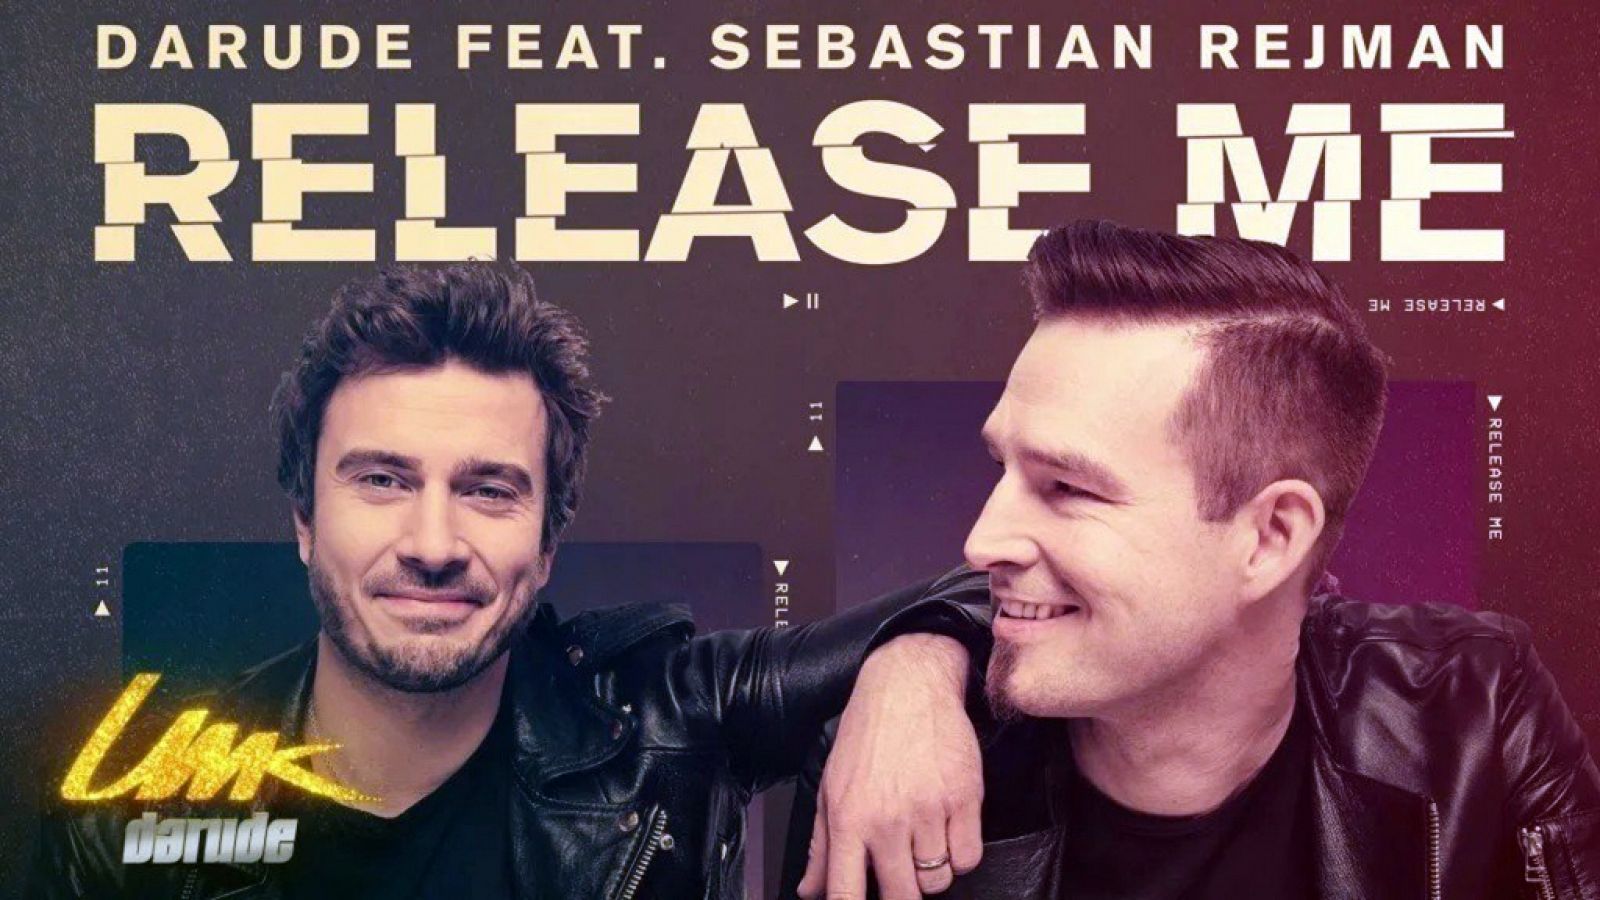 Darude y Sebastian Rejman presentan "Release me", la primera canción de Finlandia para Eurovisión 2019